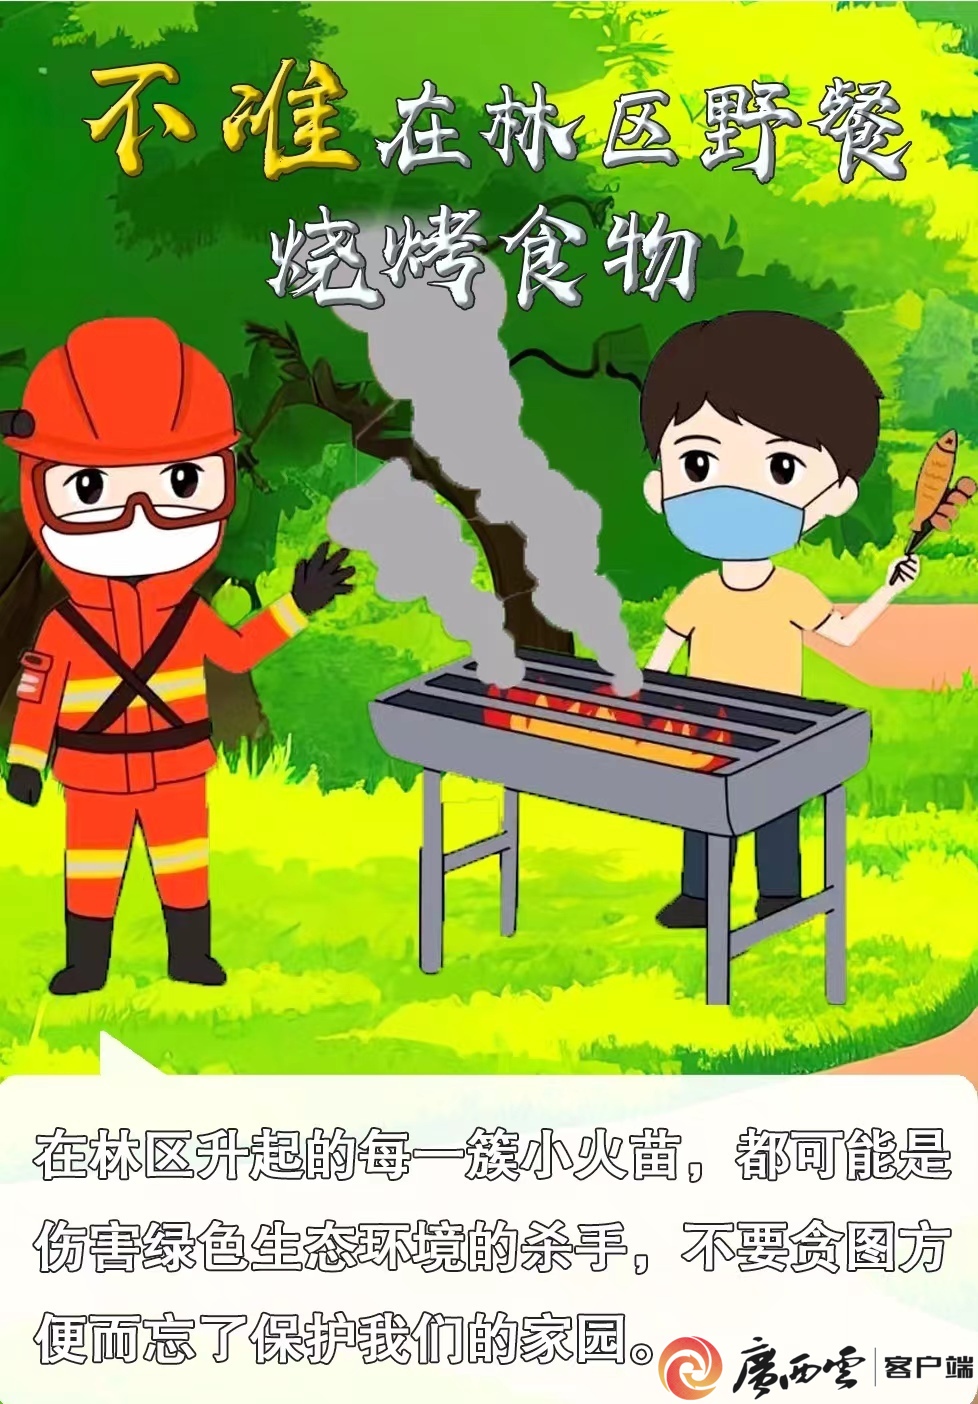 森林防火牢记十不准宣传漫画国家消防救援局广西机动队伍供图